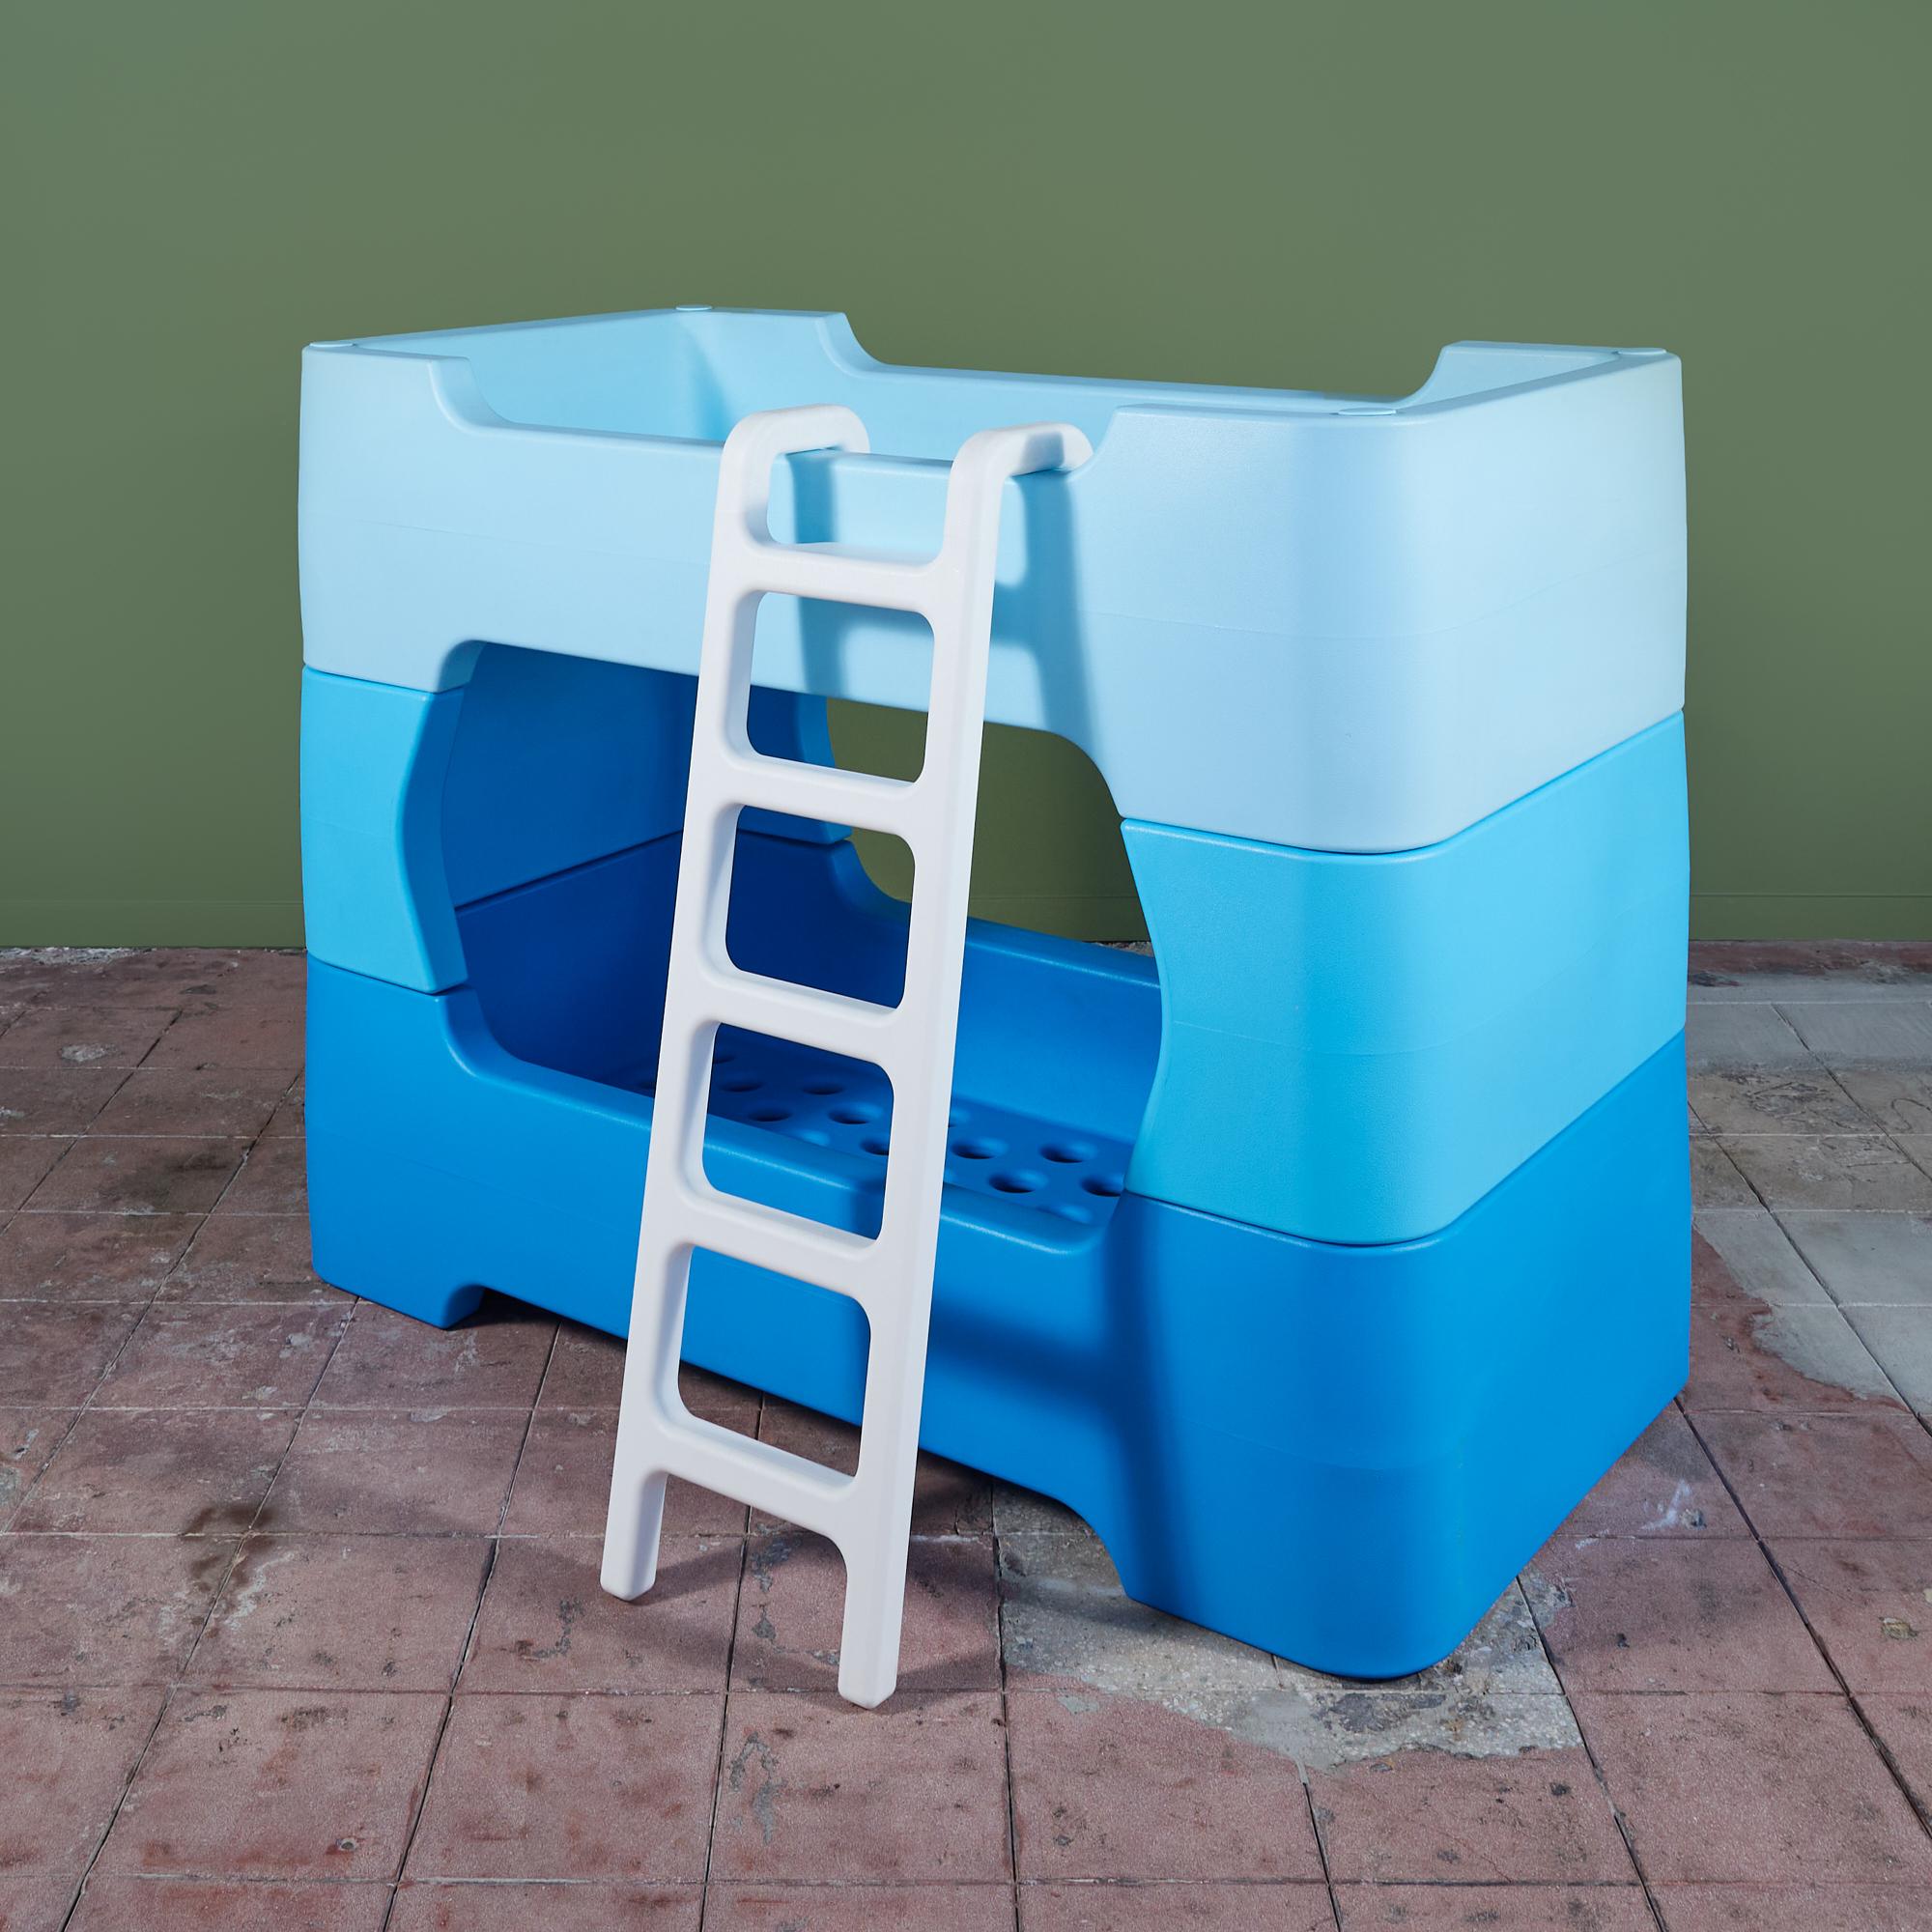 Das Etagenbett Bunky von Marc Newson für Magis, ca. 2011, Italien, ist ein modulares System aus geformtem Kunststoff, das sich stapeln oder als zwei getrennte Schlafplätze verwenden lässt. Das Bett war Newsoms erstes Design für Kinder, und seine